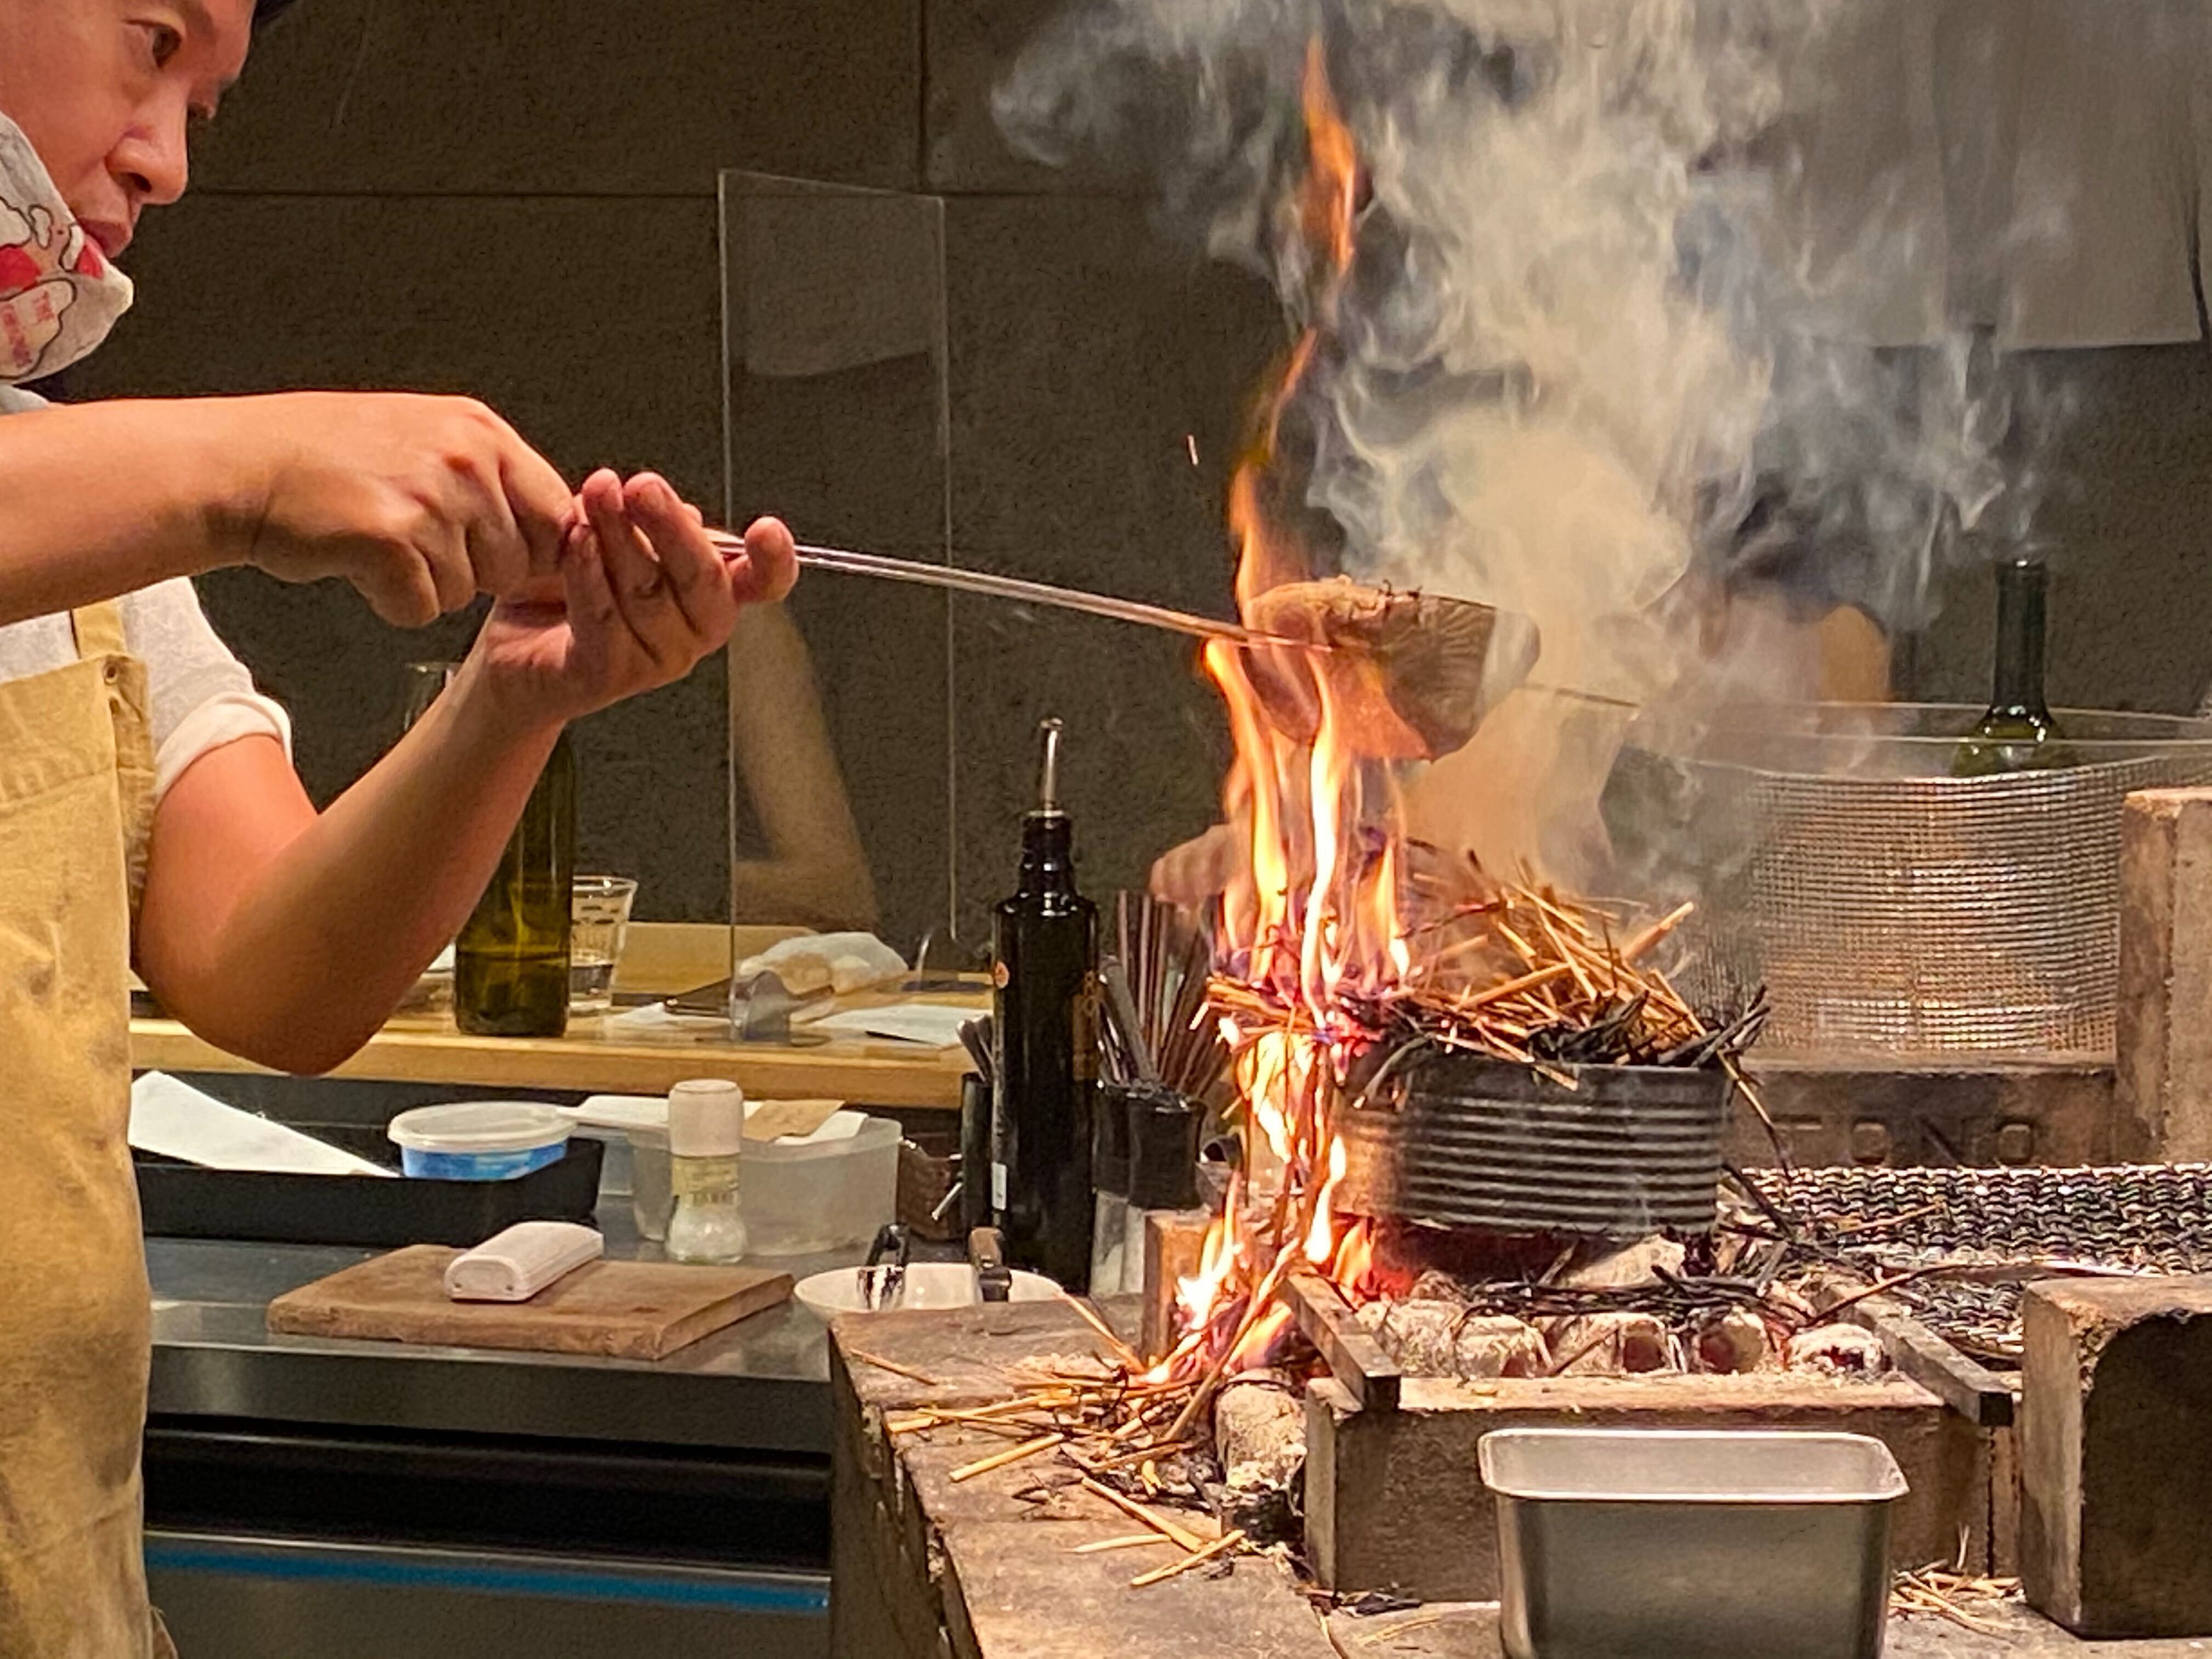 肉 季節を感じる魚介類や野菜 炭火でじっくりと焼き上げて イタリアンと炉端焼きの新しい融合を提案する Falo Eat University イートユニバーシティ